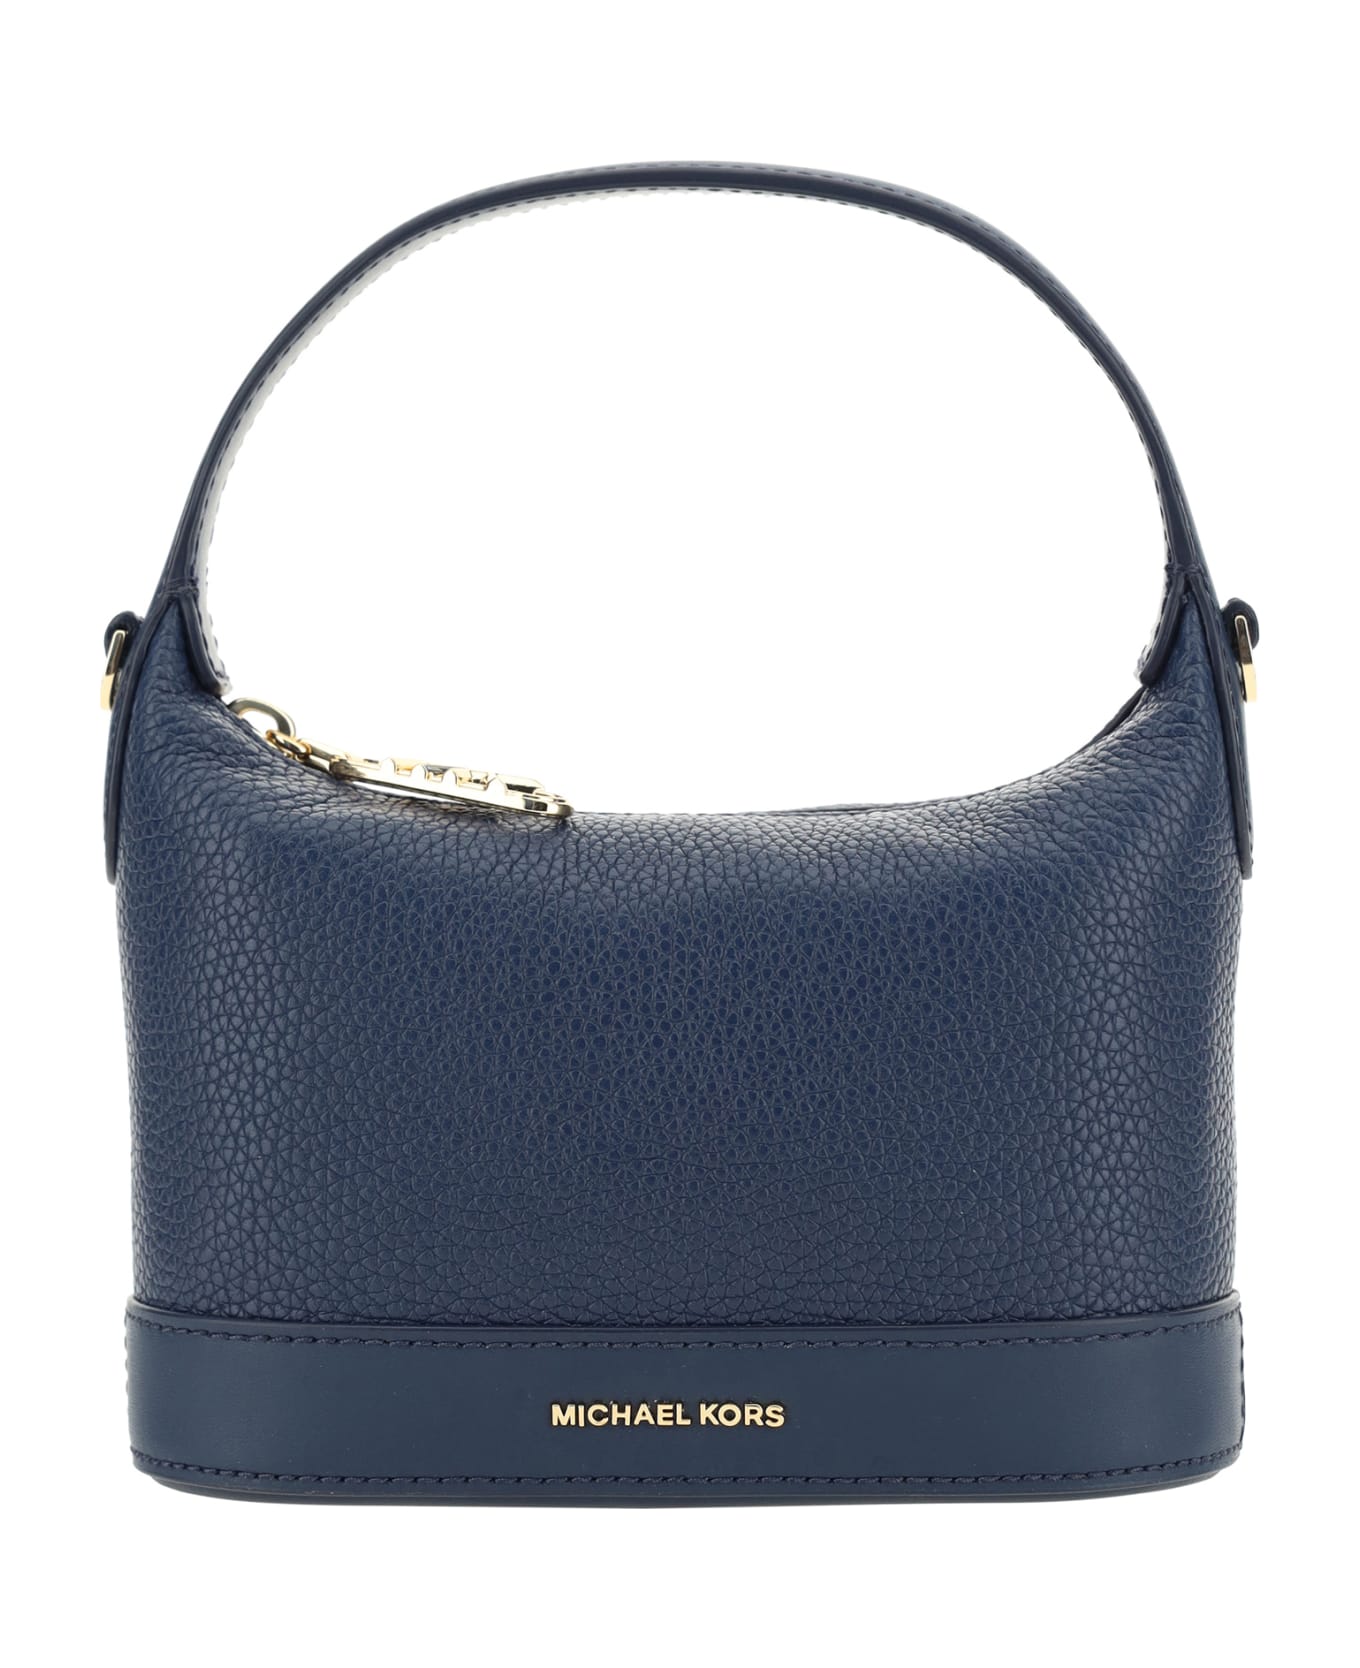 Michael Kors Handbag - Navy